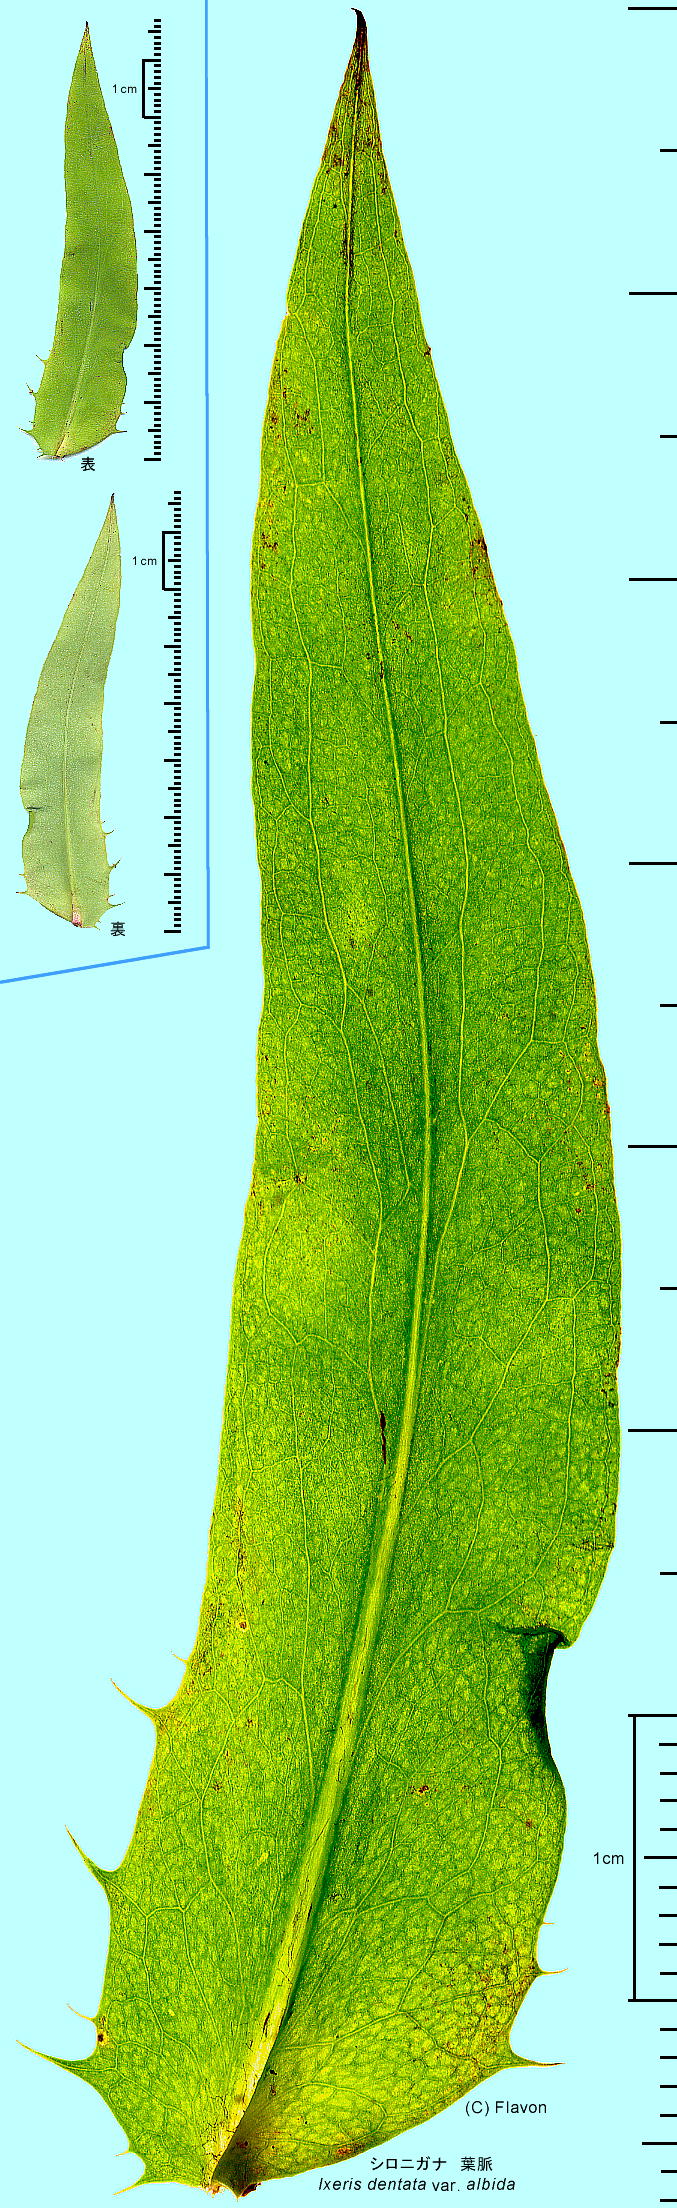 Ixeridium dentatum subsp. nipponicum var. albiflorum VoijKi tEt